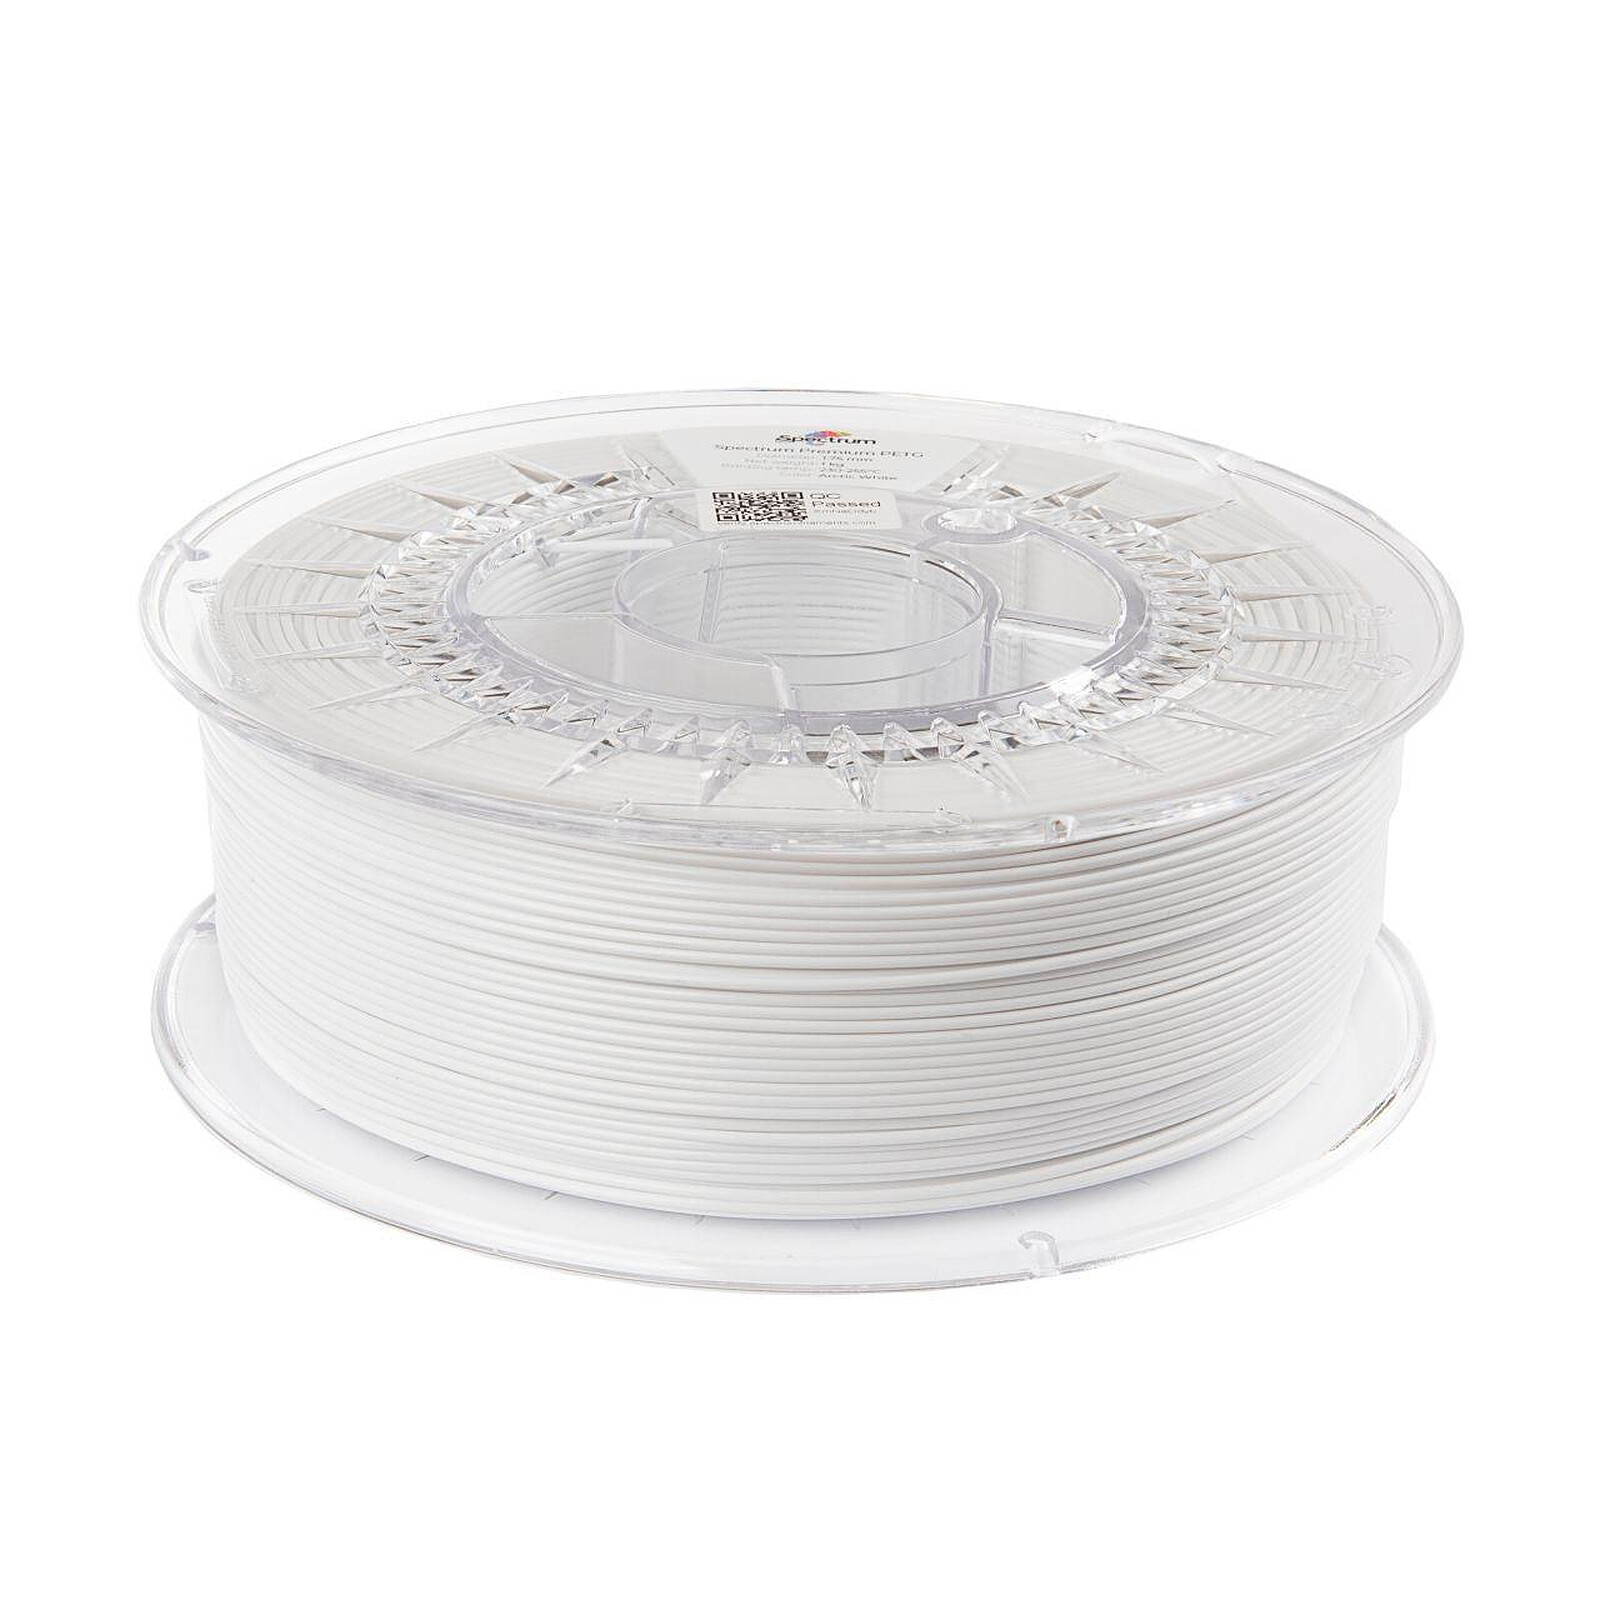 PETG HDGlass - 750g blanc opaque Filaments pour imprimantes 3D